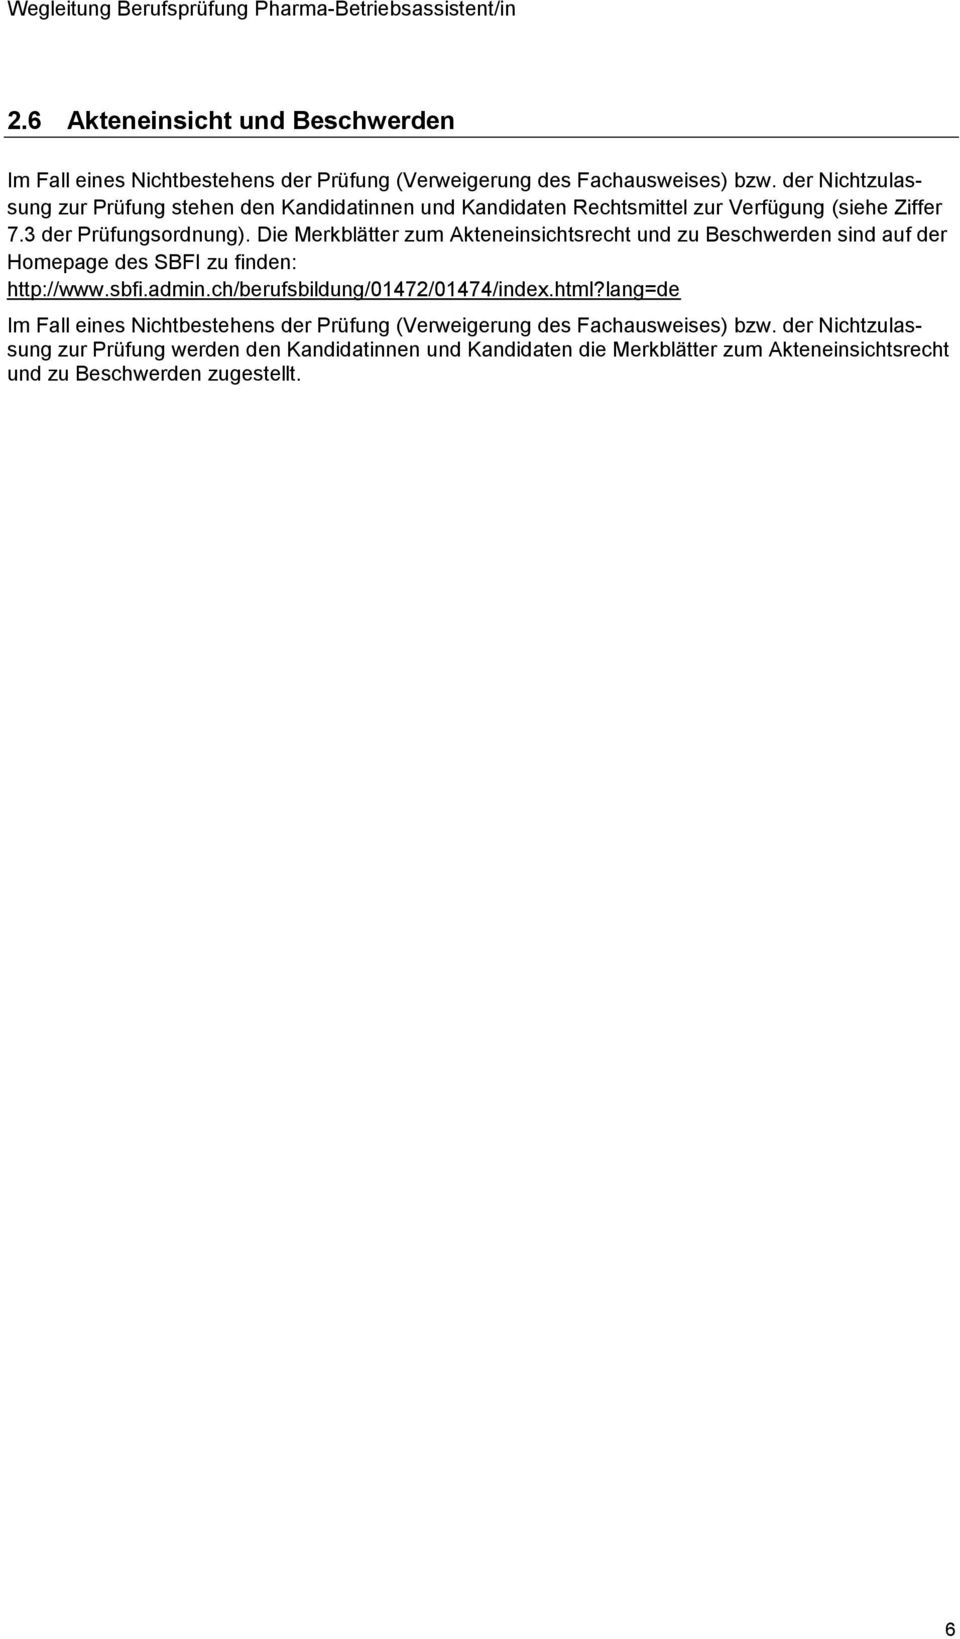 Die Merkblätter zum Akteneinsichtsrecht und zu Beschwerden sind auf der Homepage des SBFI zu finden: http://www.sbfi.admin.ch/berufsbildung/01472/01474/index.